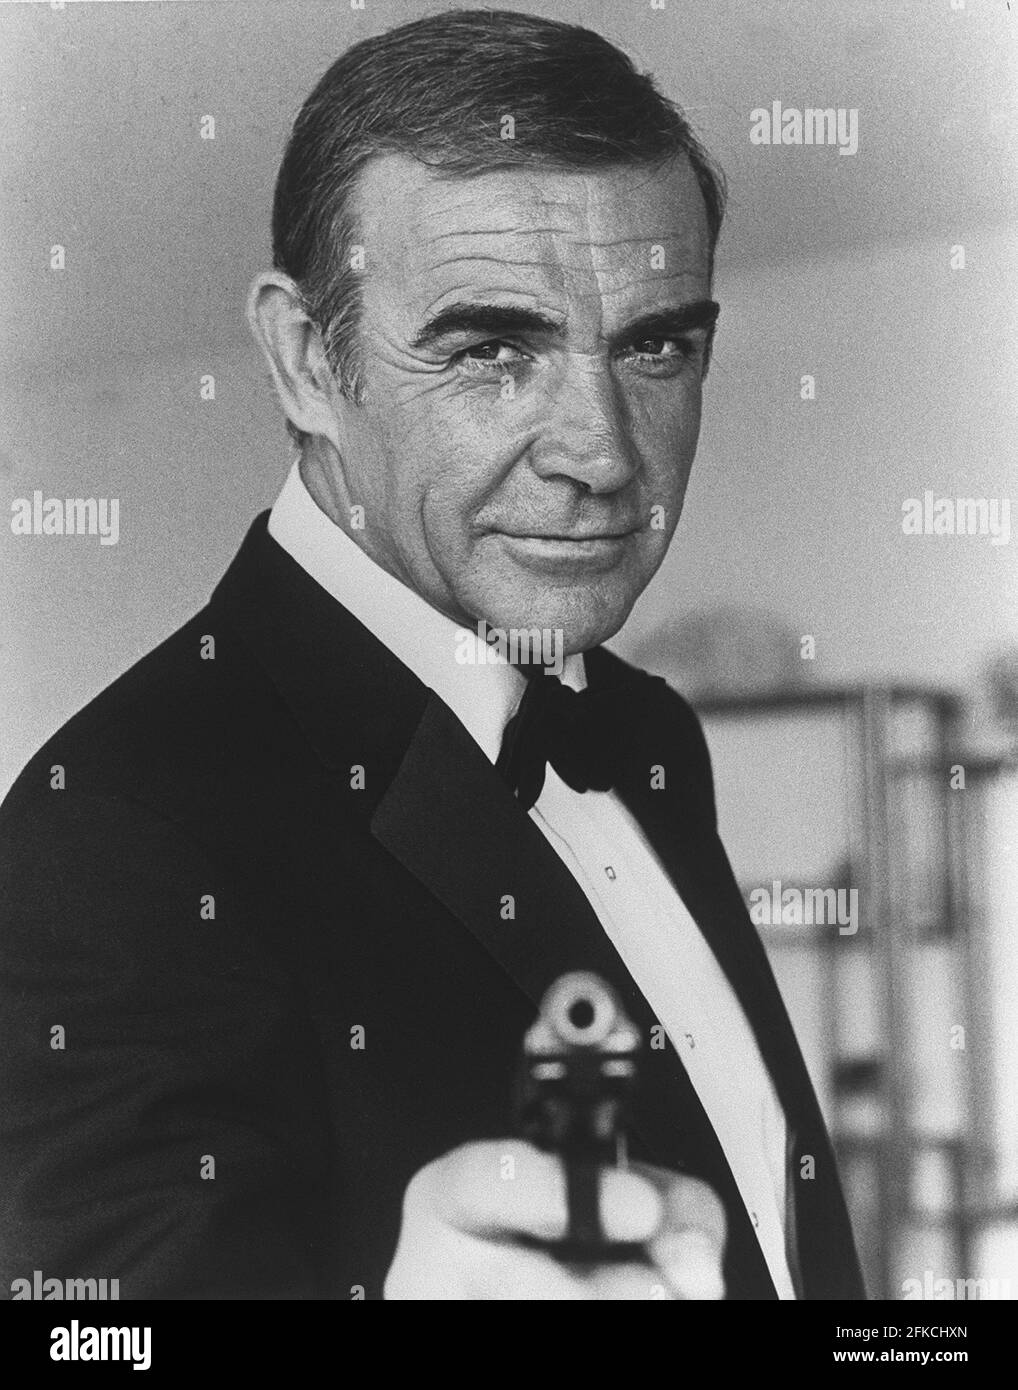 Photo de l'acteur écossais Sean Connery prise en 1982 à Nice lors de la réalisation du film "jamais dire, jamais plus" par US Irving Kerschner. Sean Connery sera pour la septième fois l'agent des services secrets James Bond 007 Banque D'Images